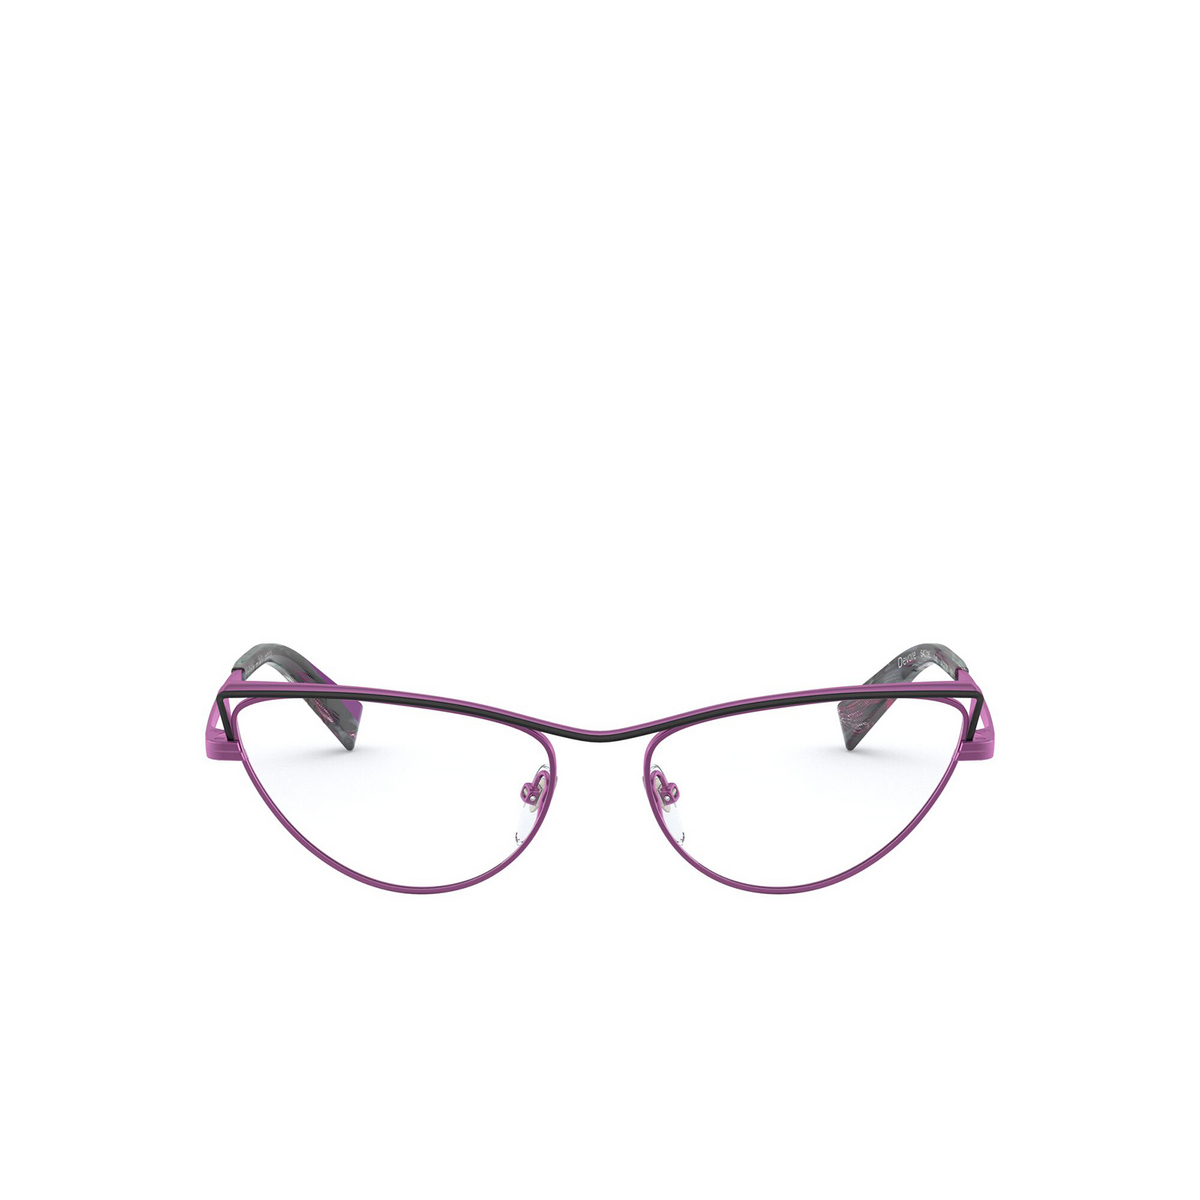 Alain Mikli® Cat-eye Eyeglasses: Devore A02038 color Matte Black / Fuxia 001 - front view.